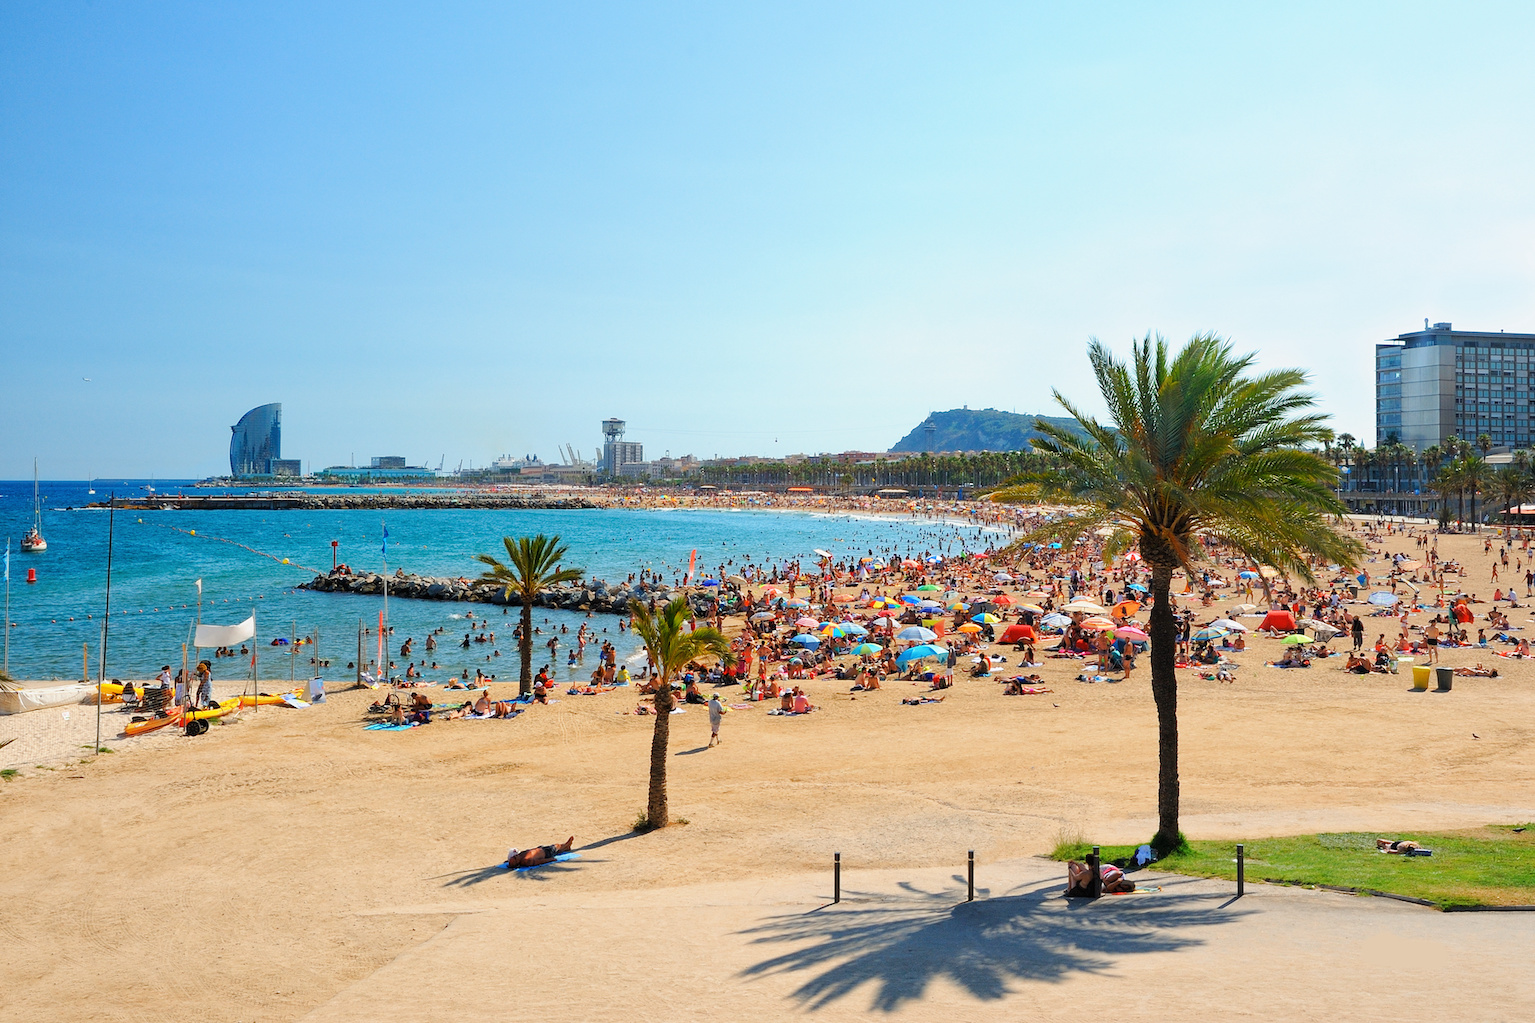 Les millors platges de Barcelona per a famílies : sol, sorra i diversió per a tothom